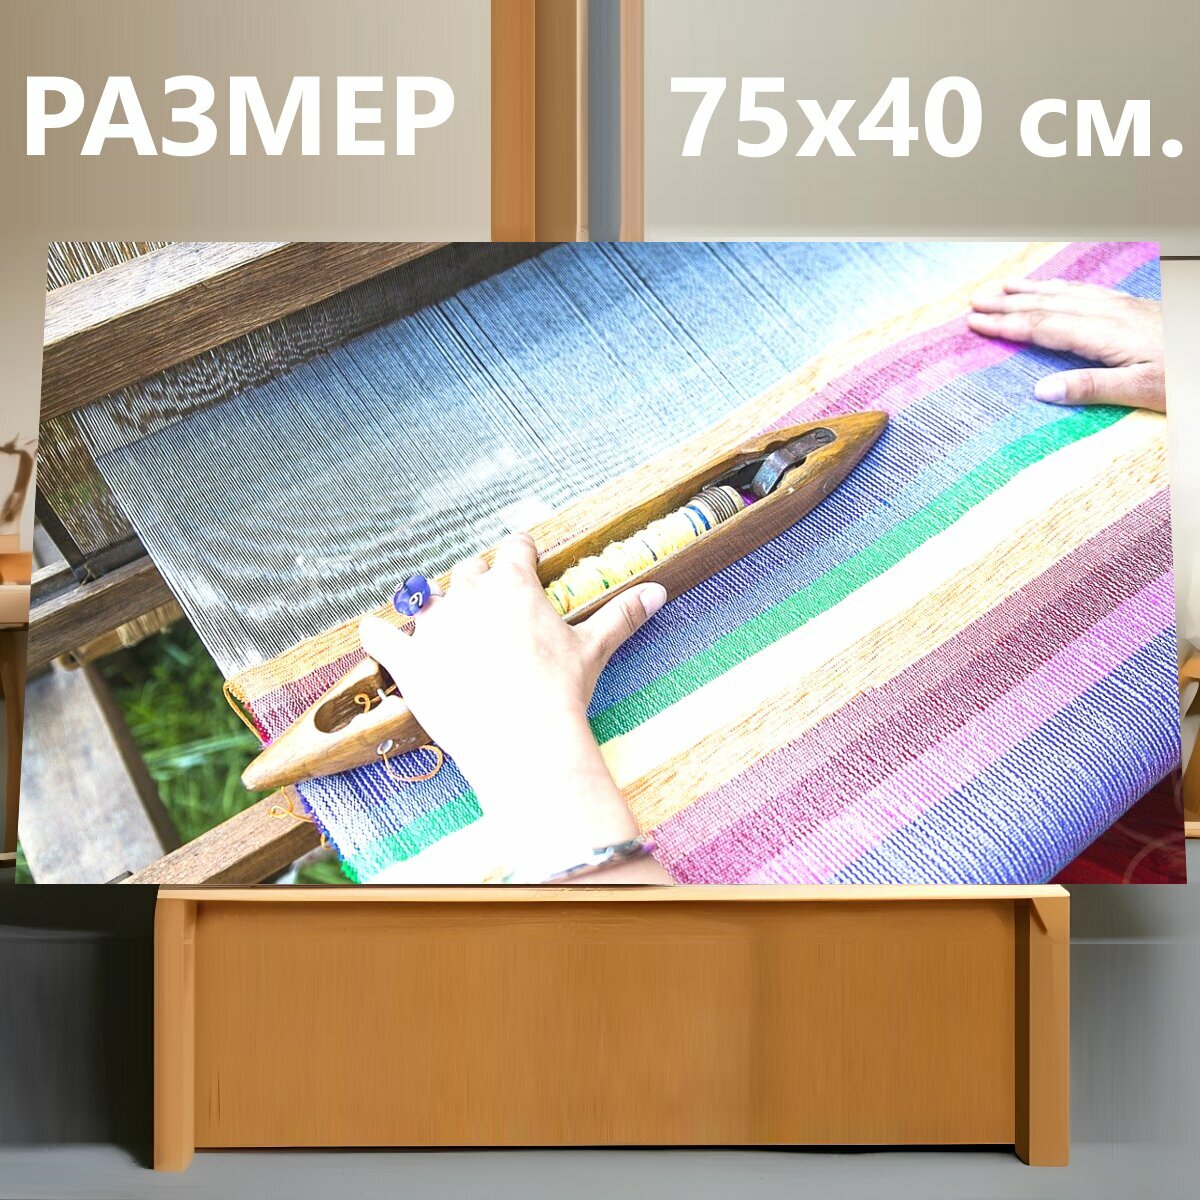 Картина на холсте "Ткацкий станок, ткачество, традиционный" на подрамнике 75х40 см. для интерьера